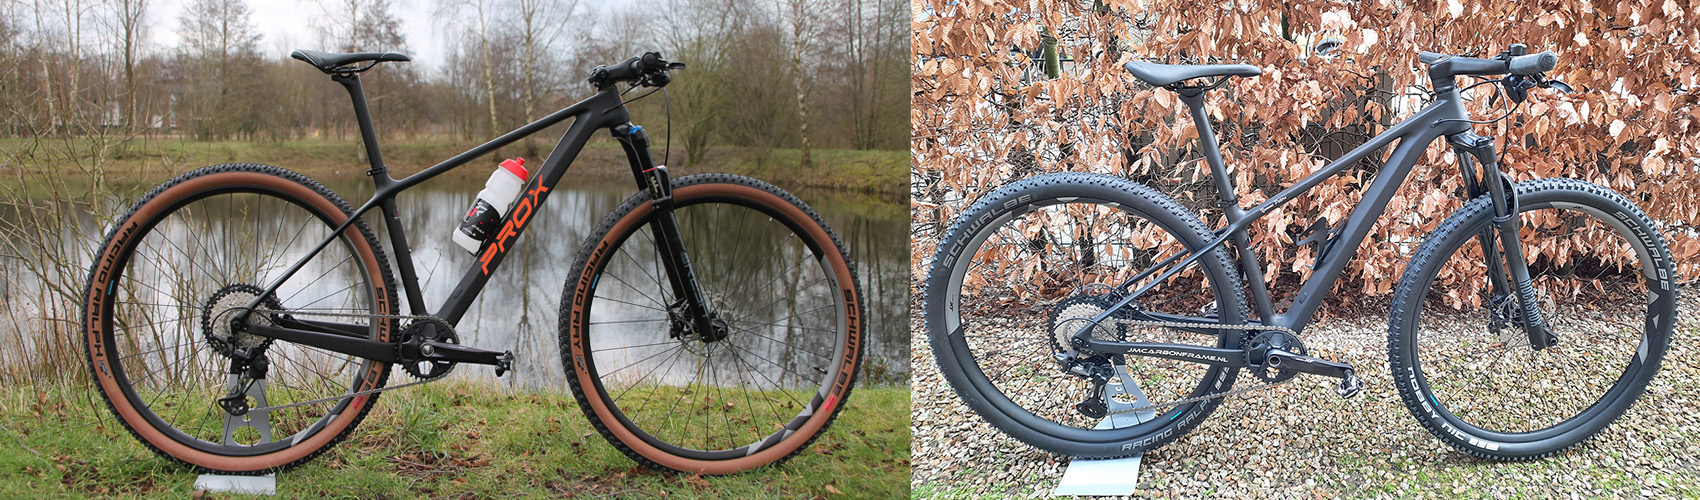 vélos complets construits avec un cadre en carbone semi-rigide PXM909